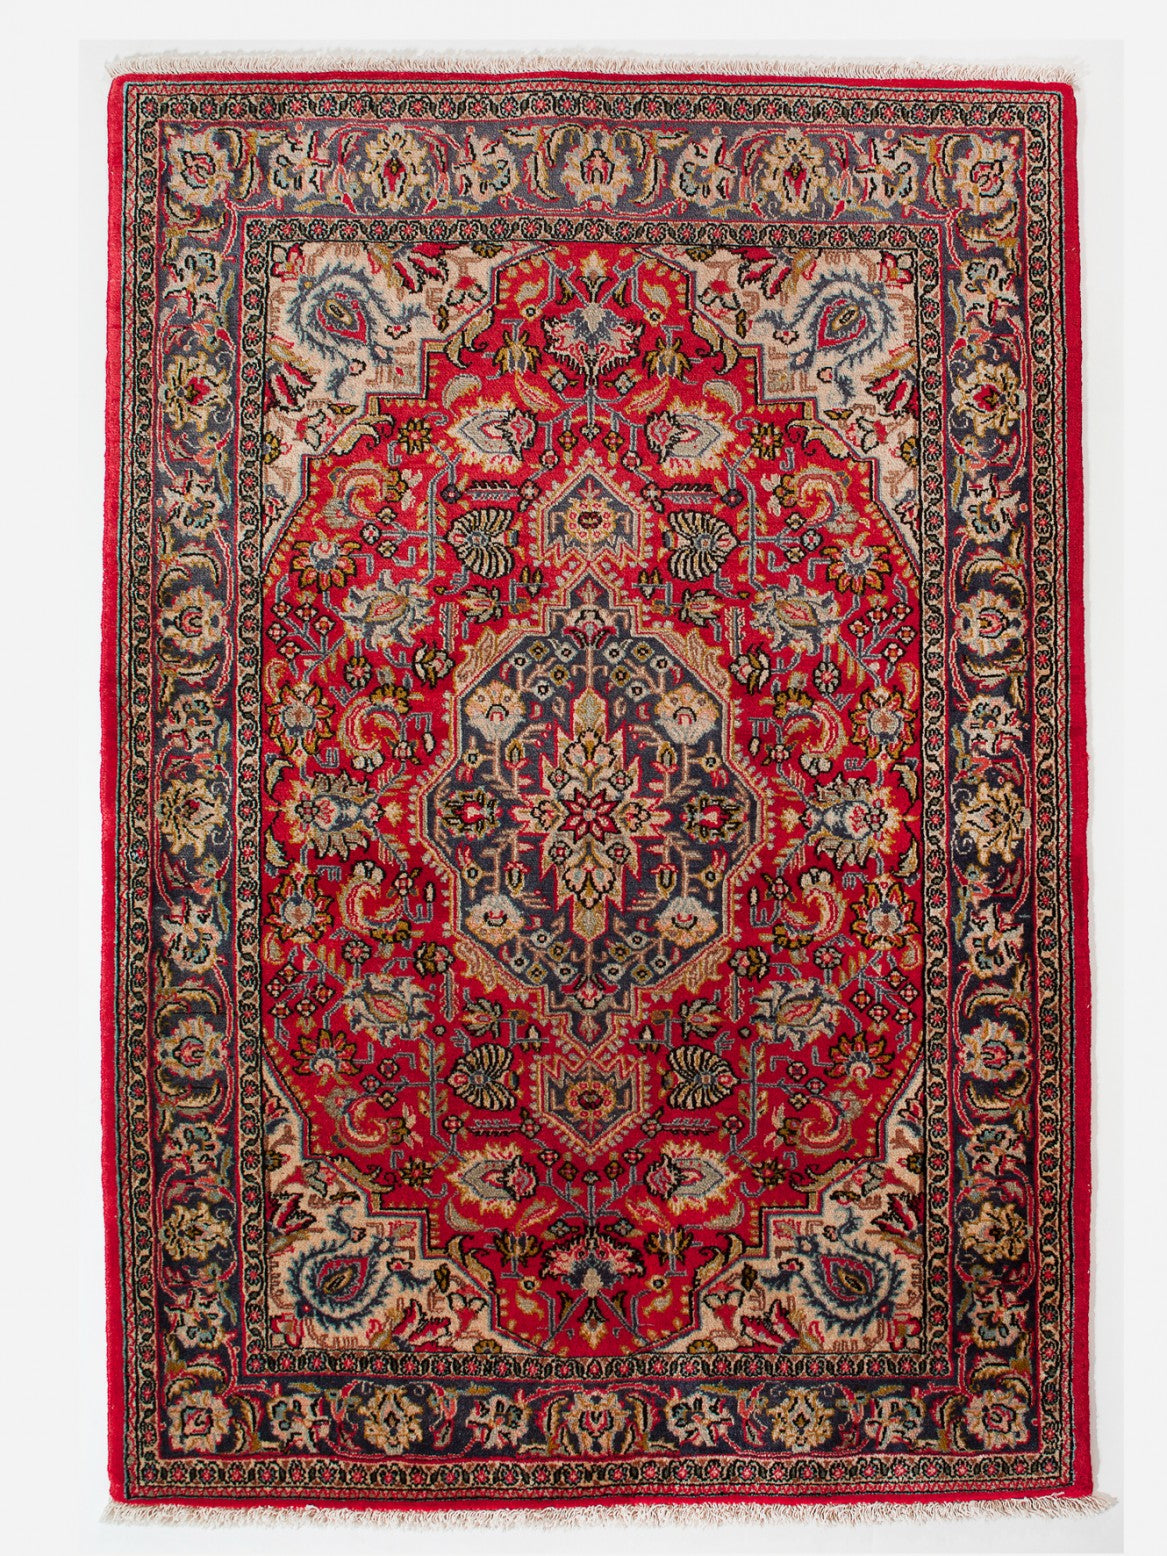 SHAREZA IRAN 153 x 103 cm